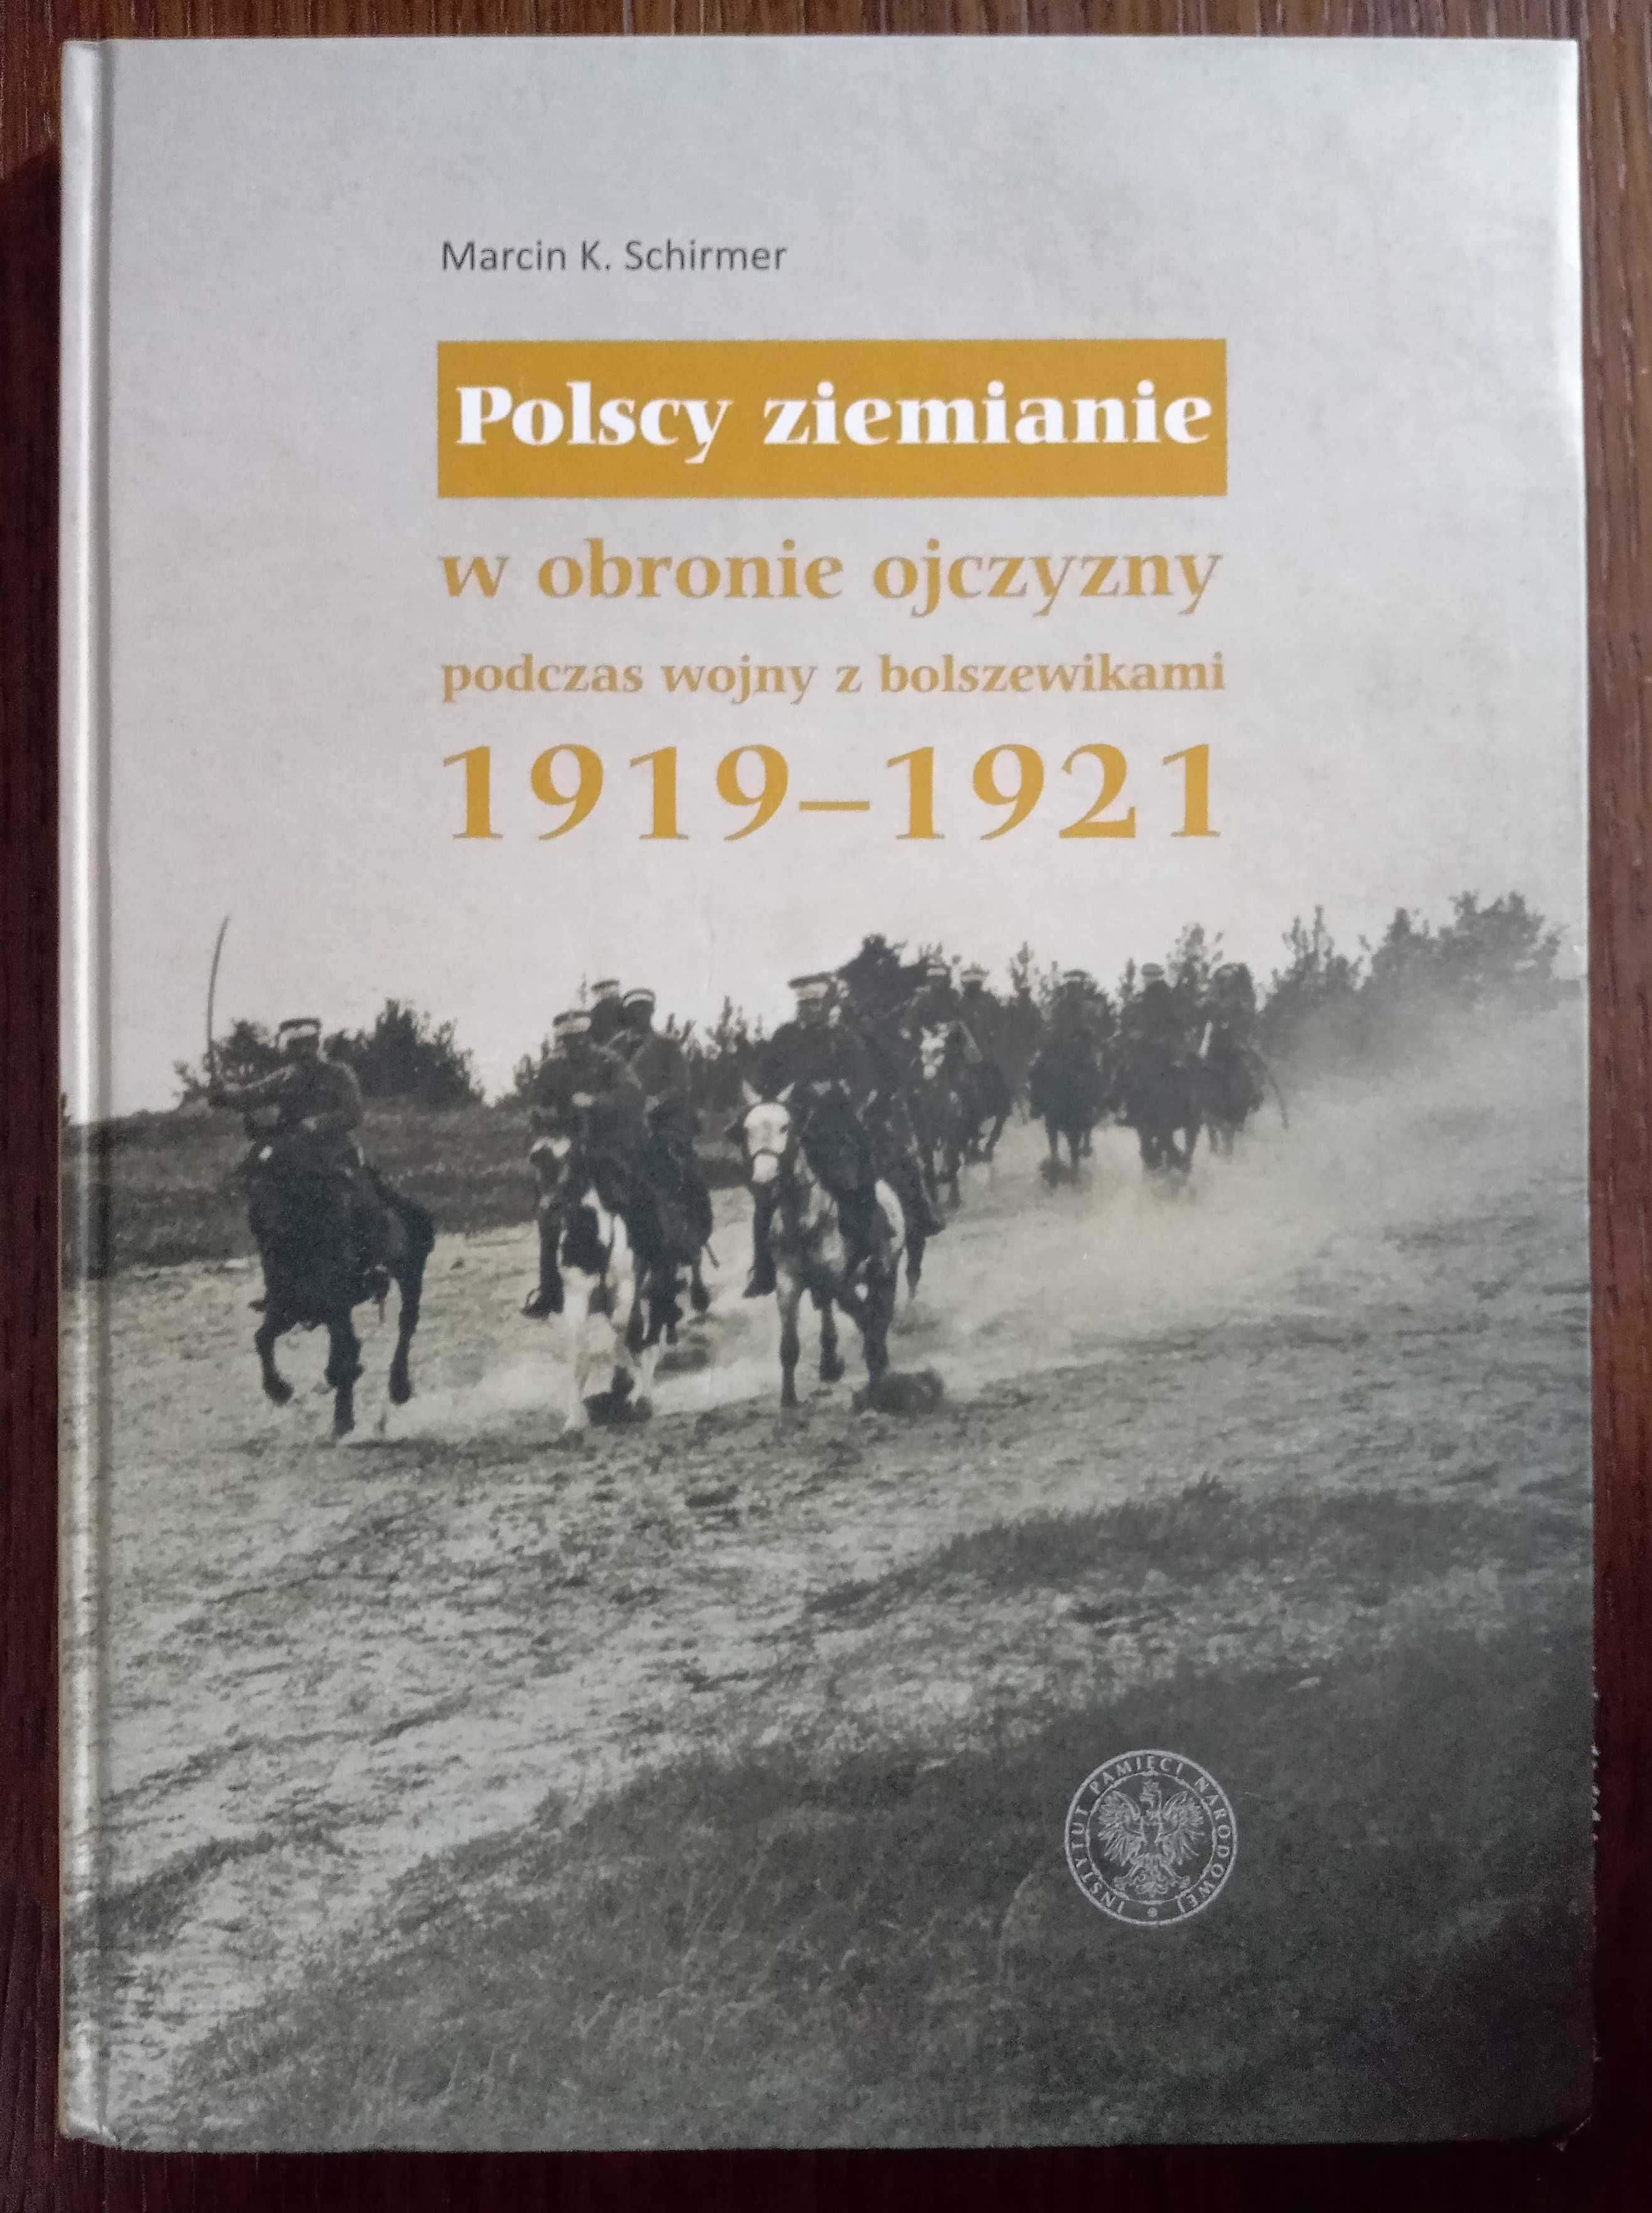 Polscy ziemianie w obronie ojczyzny podczas wojny z bolszewikami